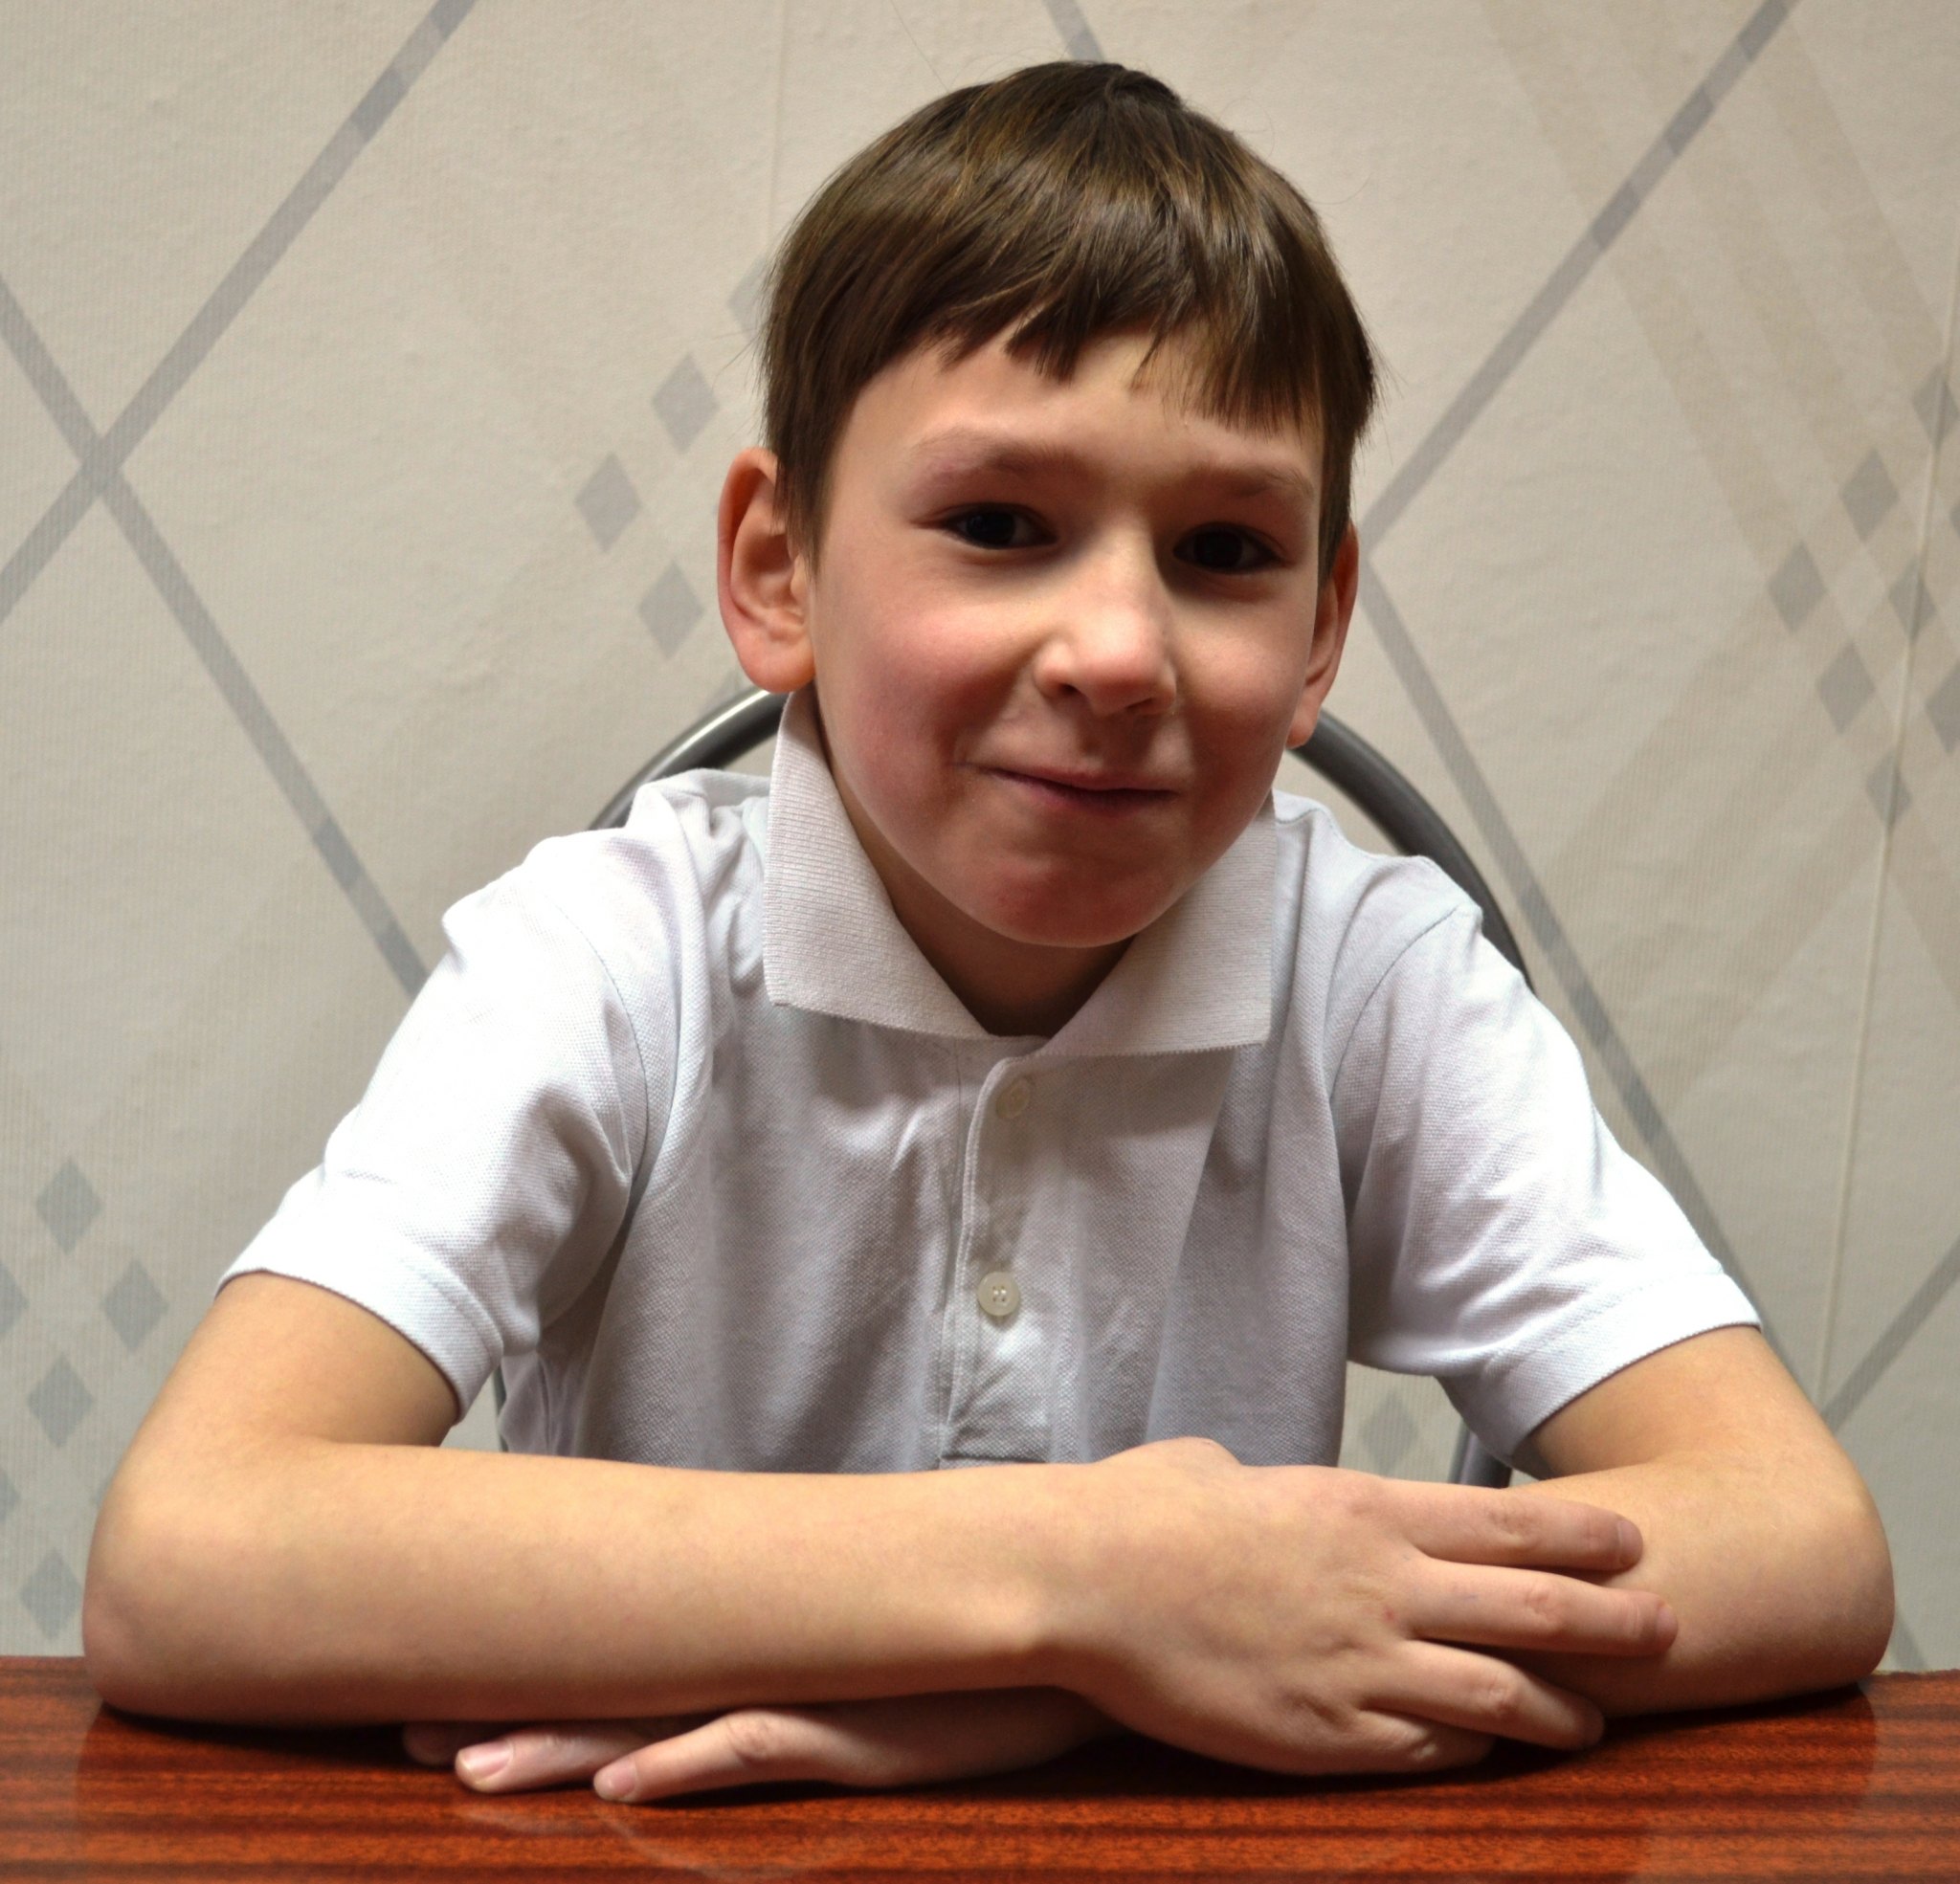 "Я хочу найти семью": Серьезный и деловой 9-летний малыш нуждается в родителях